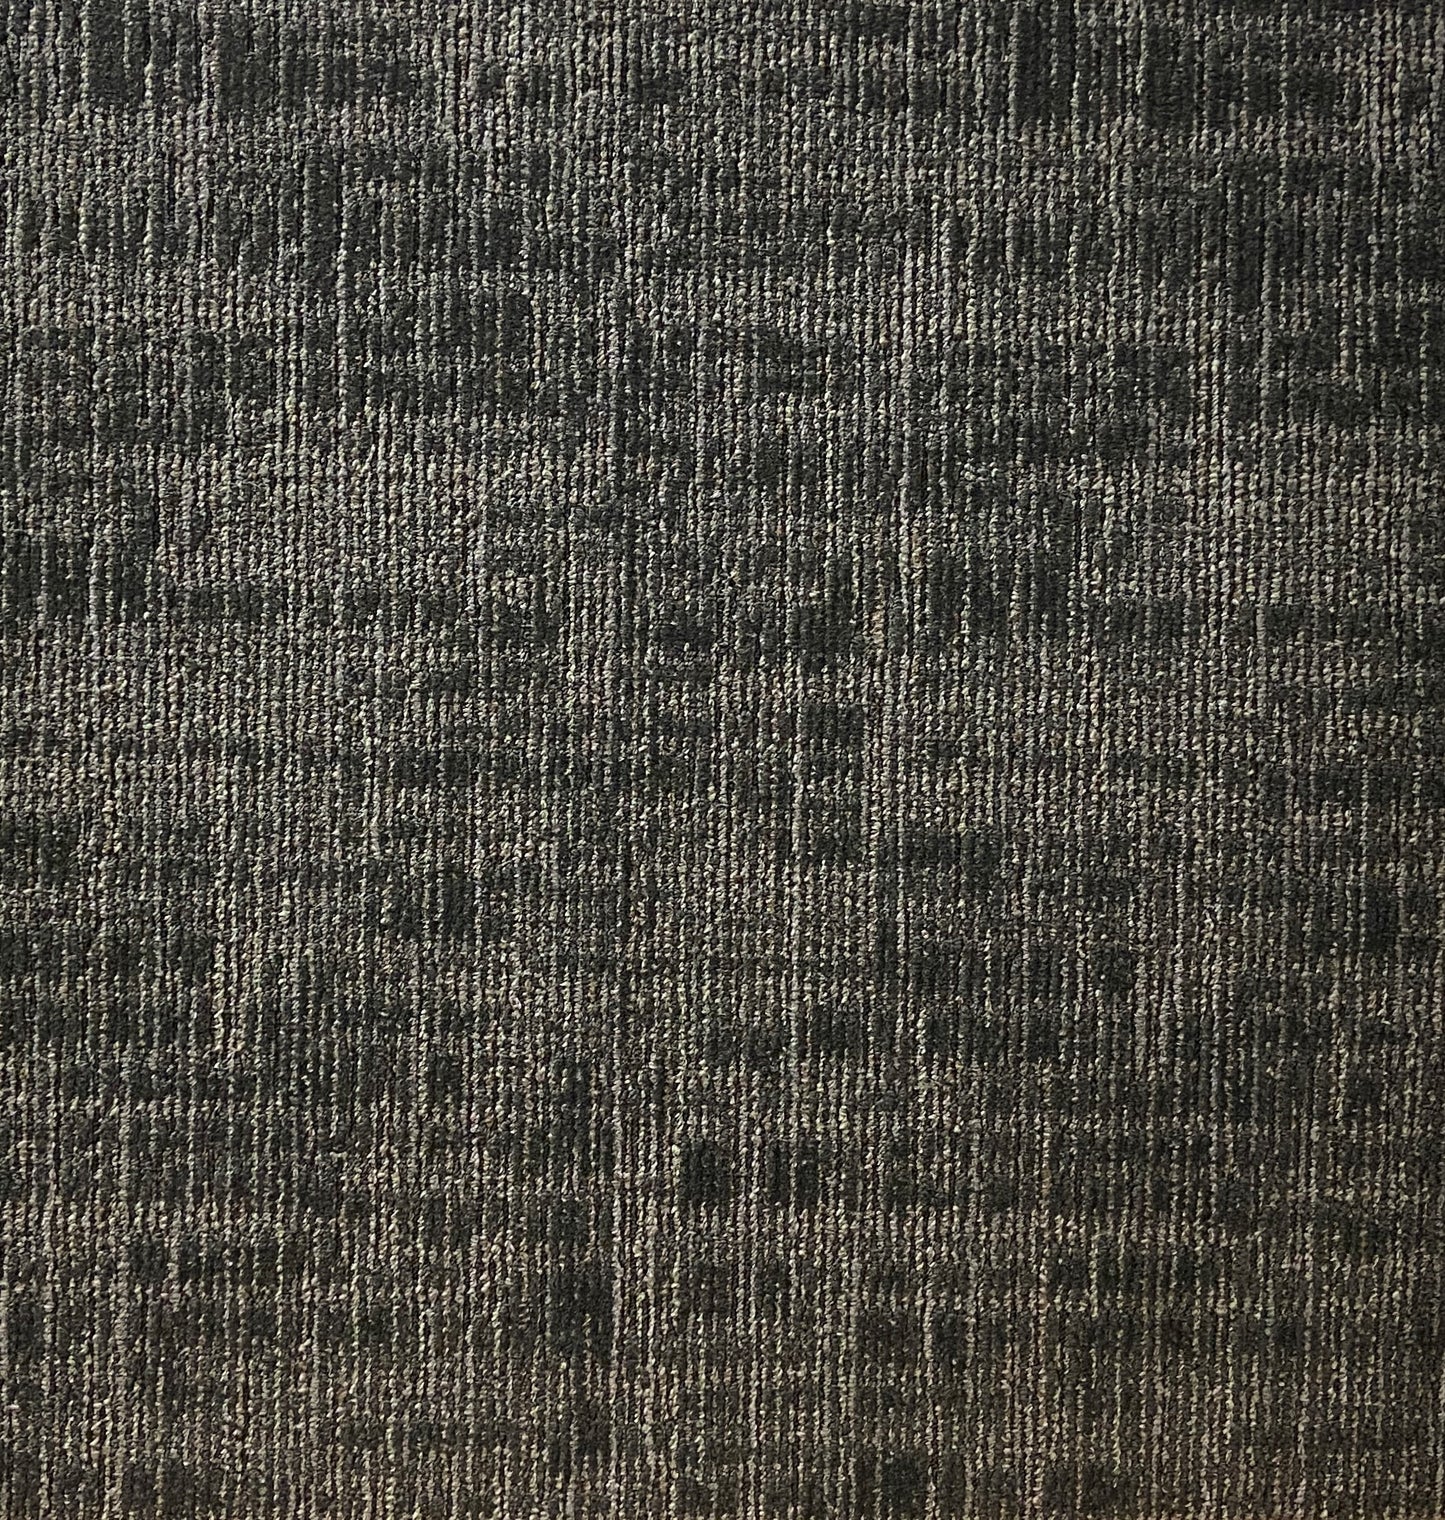 Shaw Carbon Carpet Tile-24"x 24"(12 Tiles/case, 48 sq. ft./case)